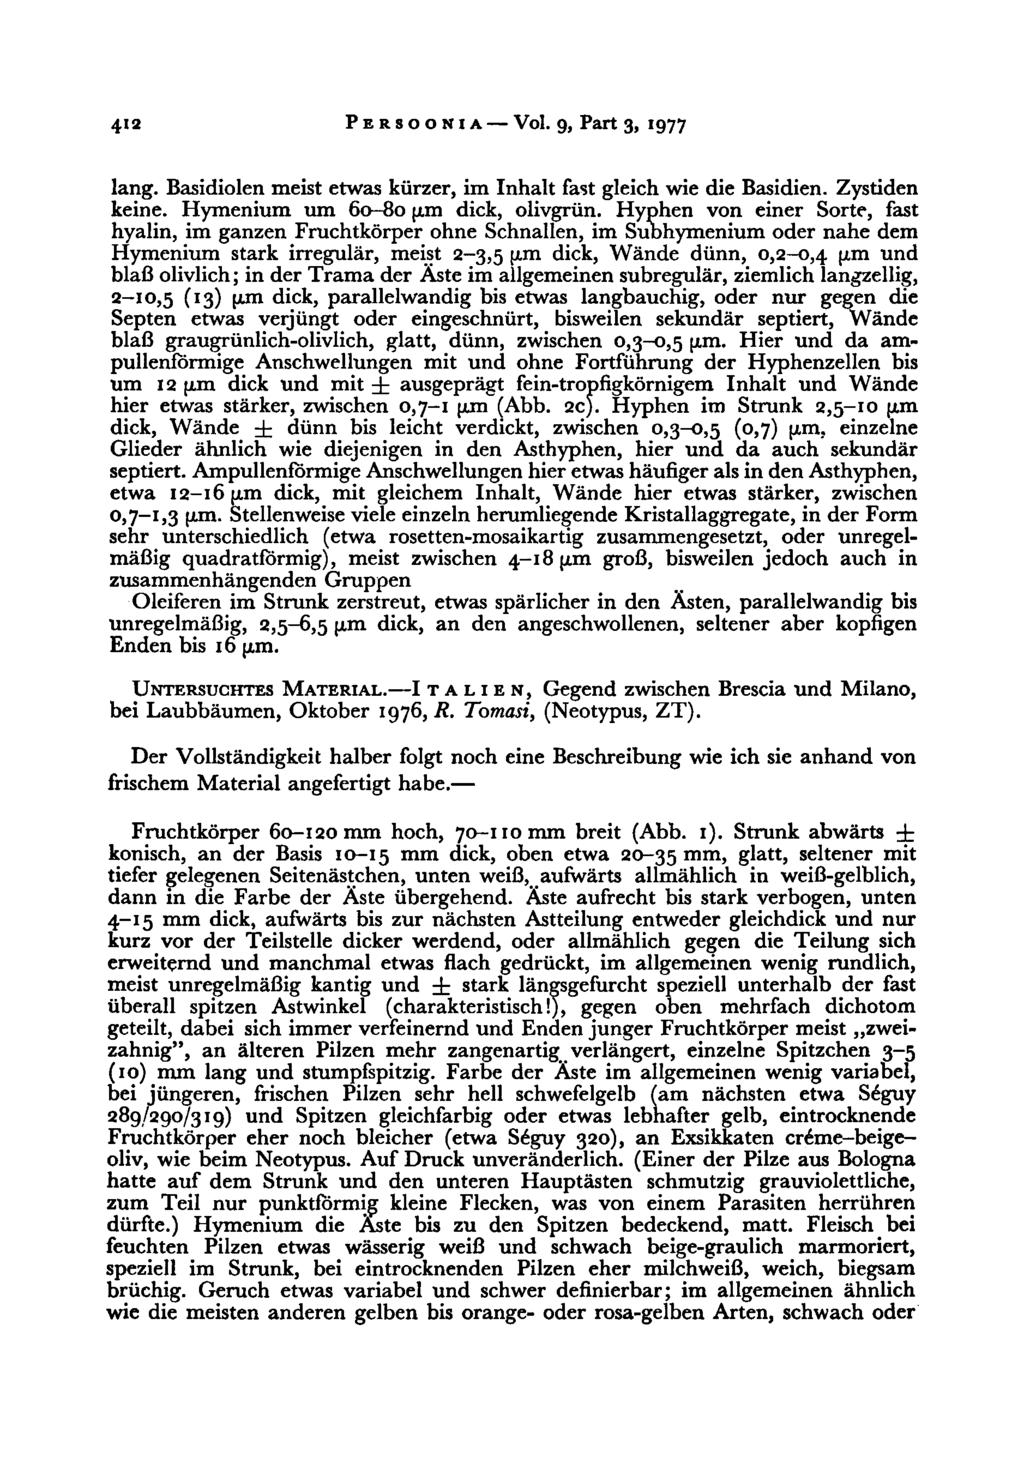 412 Persoonia Vol. 9, Part 3, 1977 lang. Basidiolen meist etwas kürzer, im Inhalt fast gleich wie die Basidien. Zystiden keine. Hymenium um 60-80 pm dick, olivgrün.